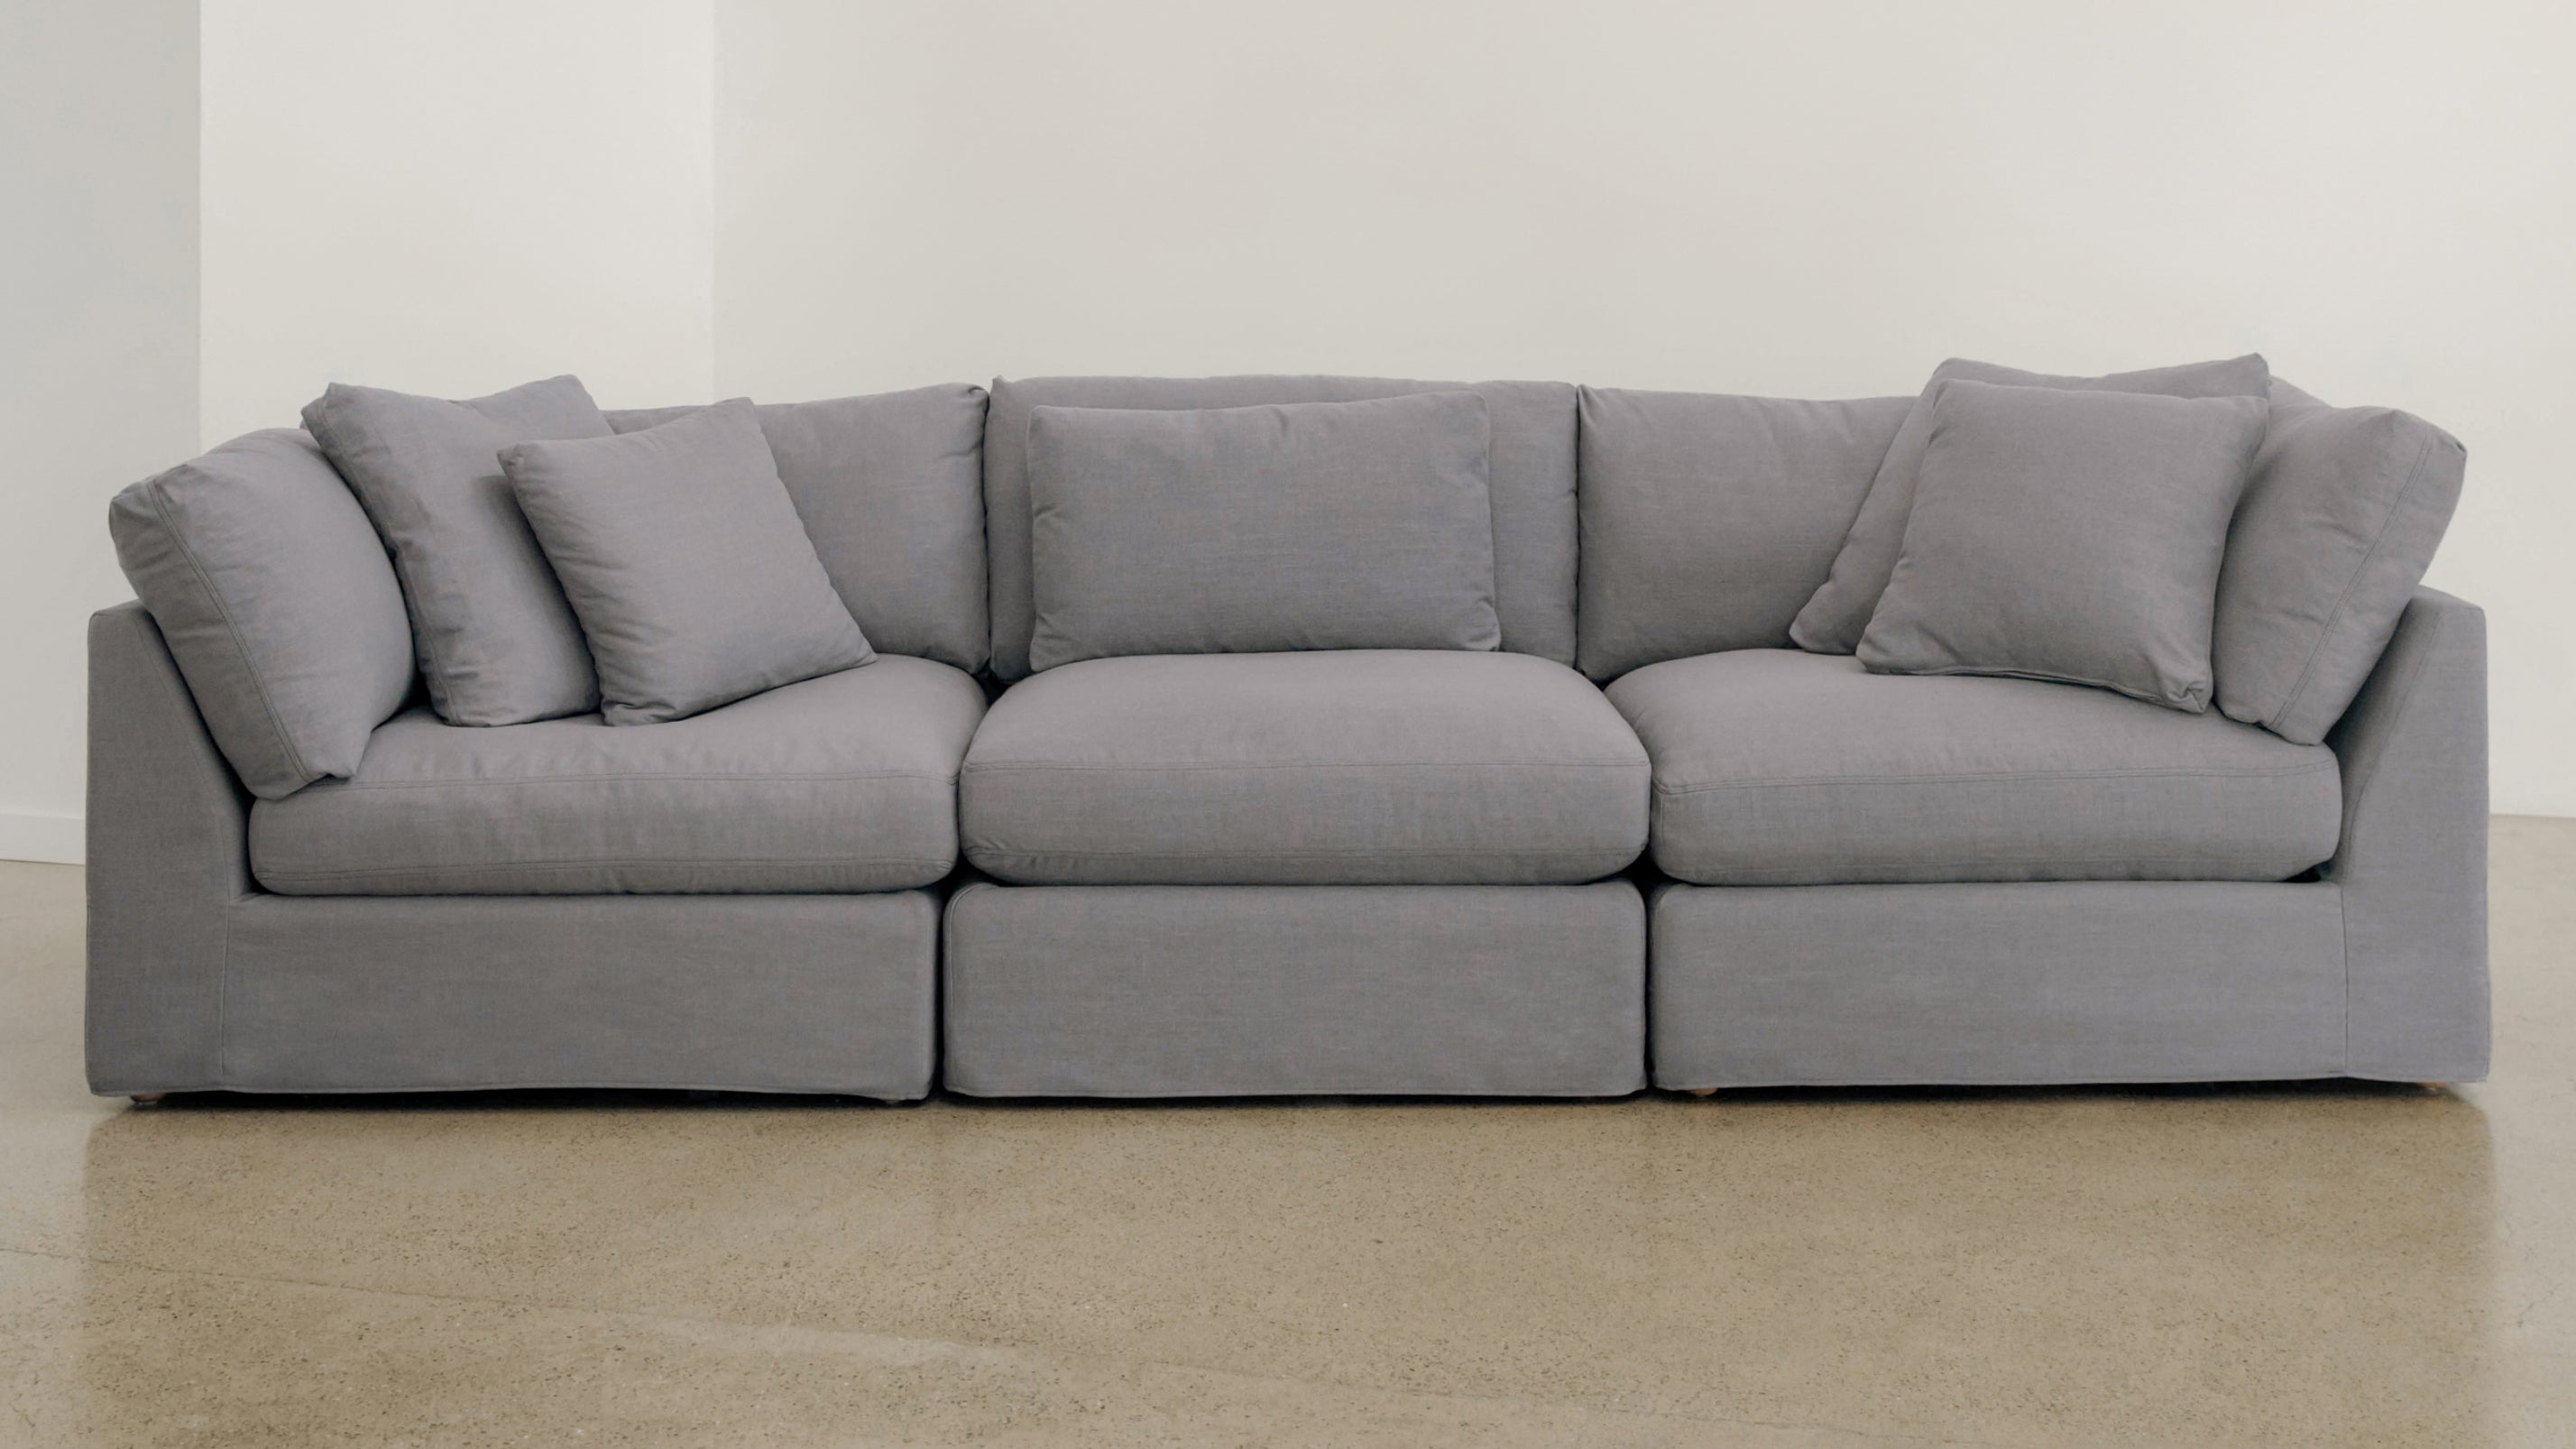 Get Together™ 3-Piece Modular Sofa, Large, Clay - Image 9